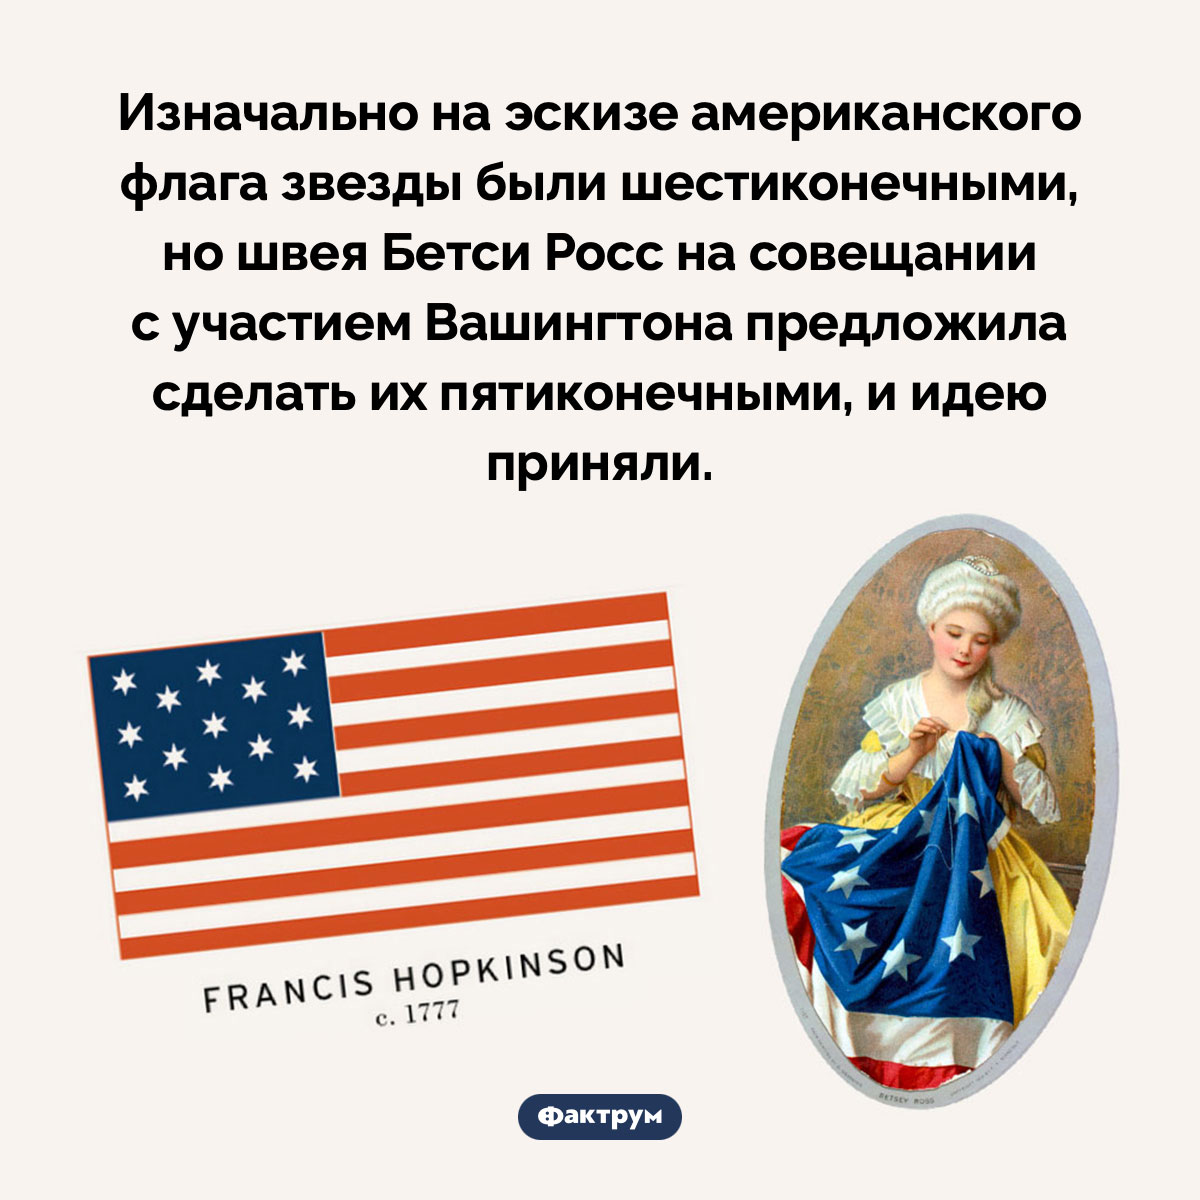 Изначально на эскизе американского флага звезды были шестиконечными. Изначально на эскизе американского флага звезды были шестиконечными, но швея Бетси Росс на совещании с участием Вашингтона предложила сделать их пятиконечными, и идею приняли.